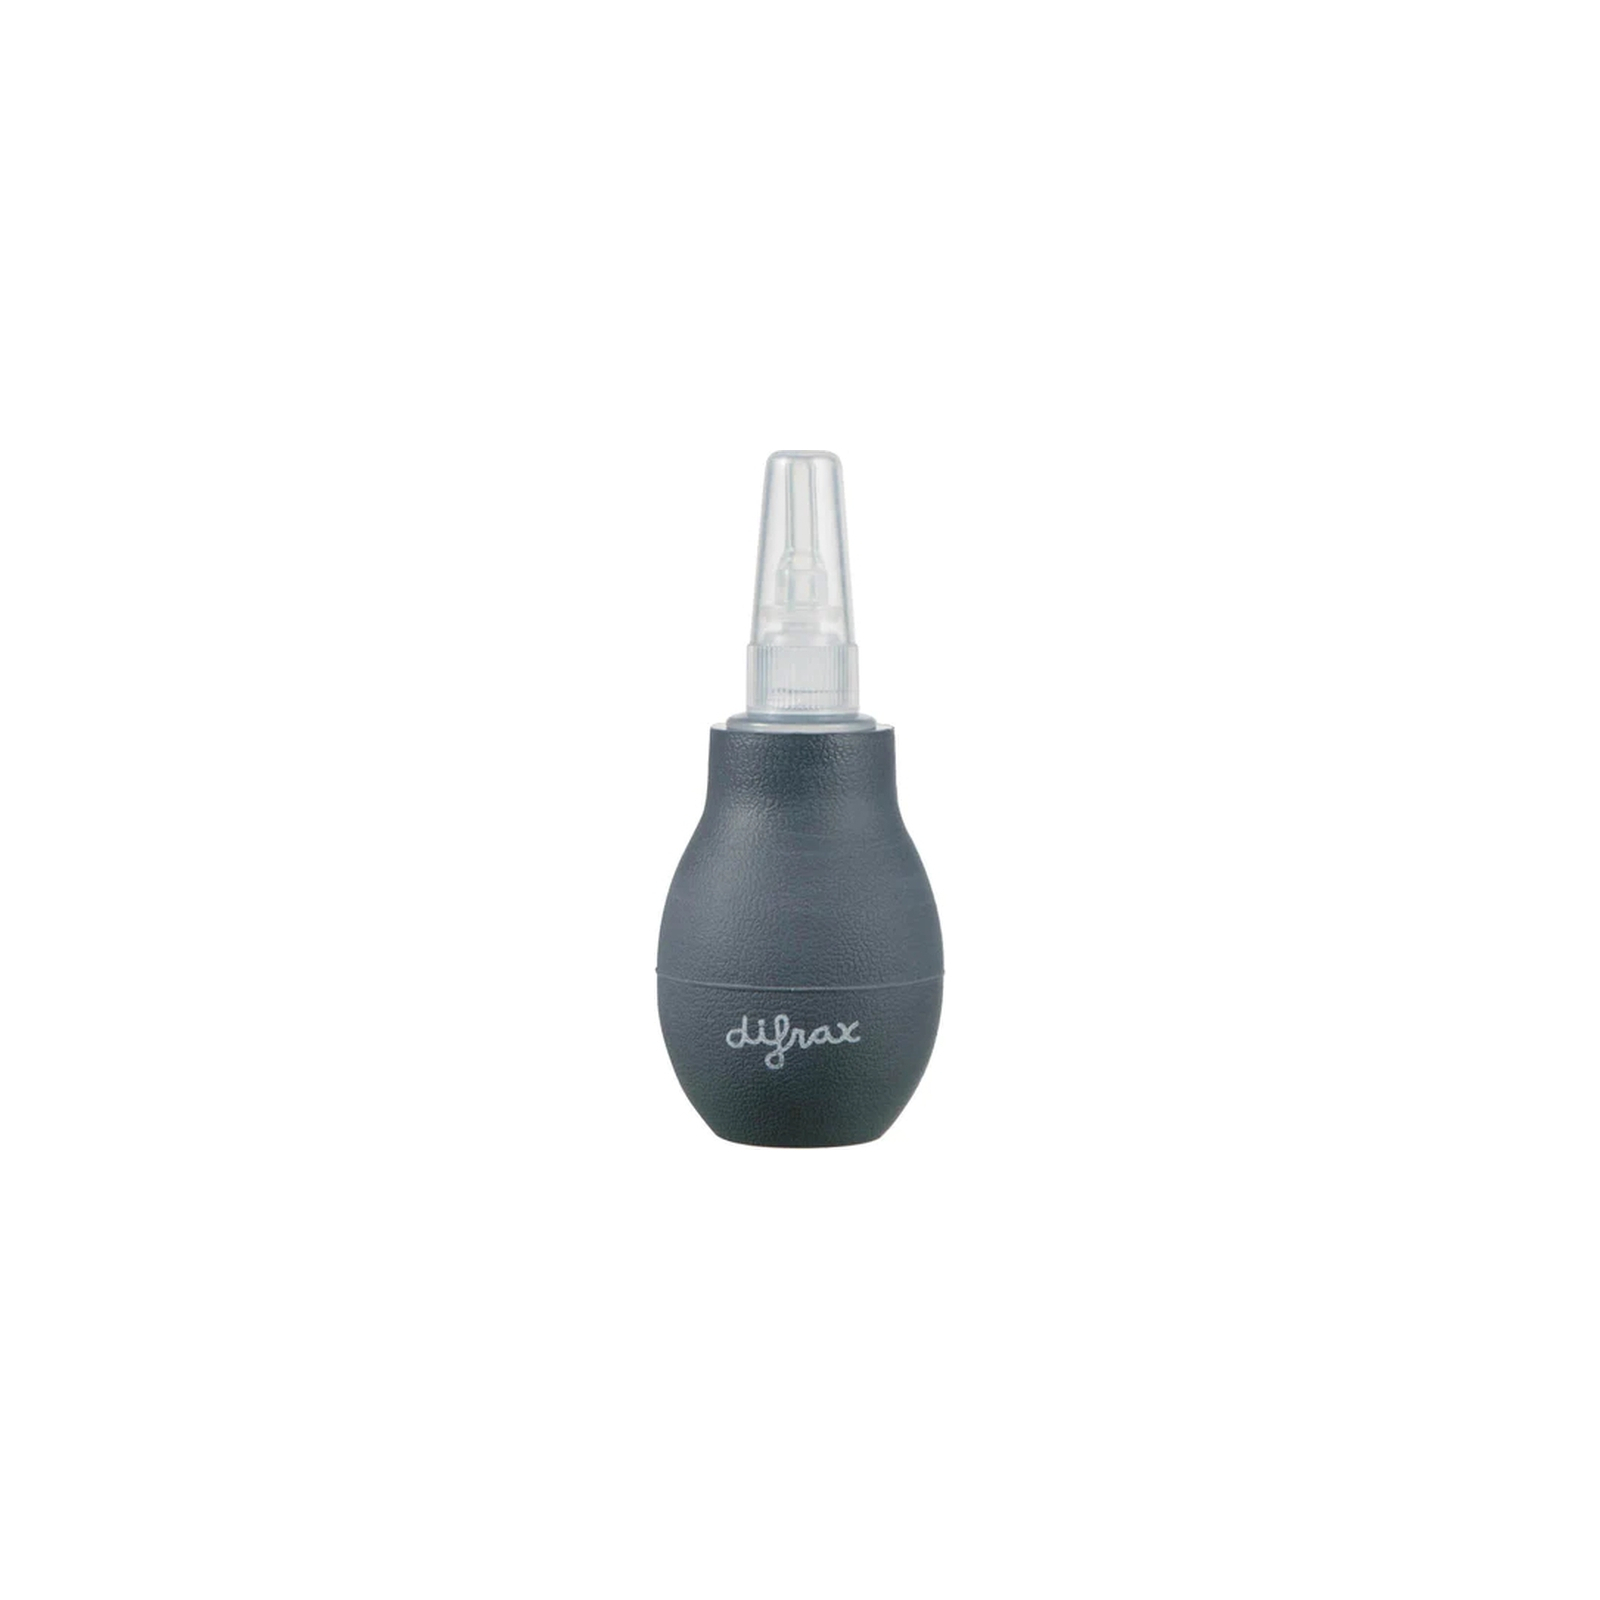 Носовой аспиратор Difrax Nasal aspirator (167)